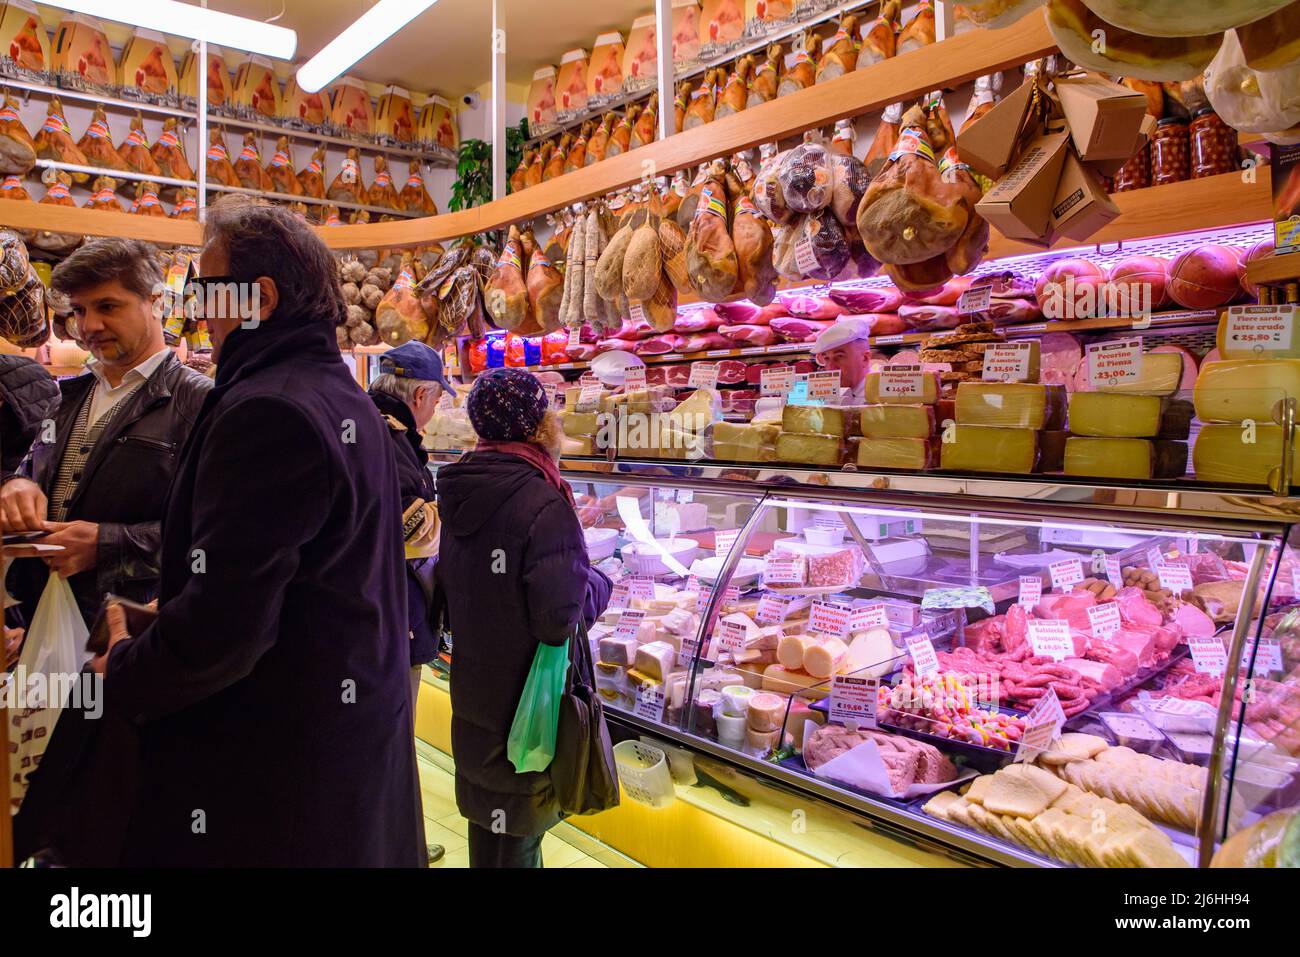 Geschäft mit Käse und Schinken in Bologna, Italien Stockfoto